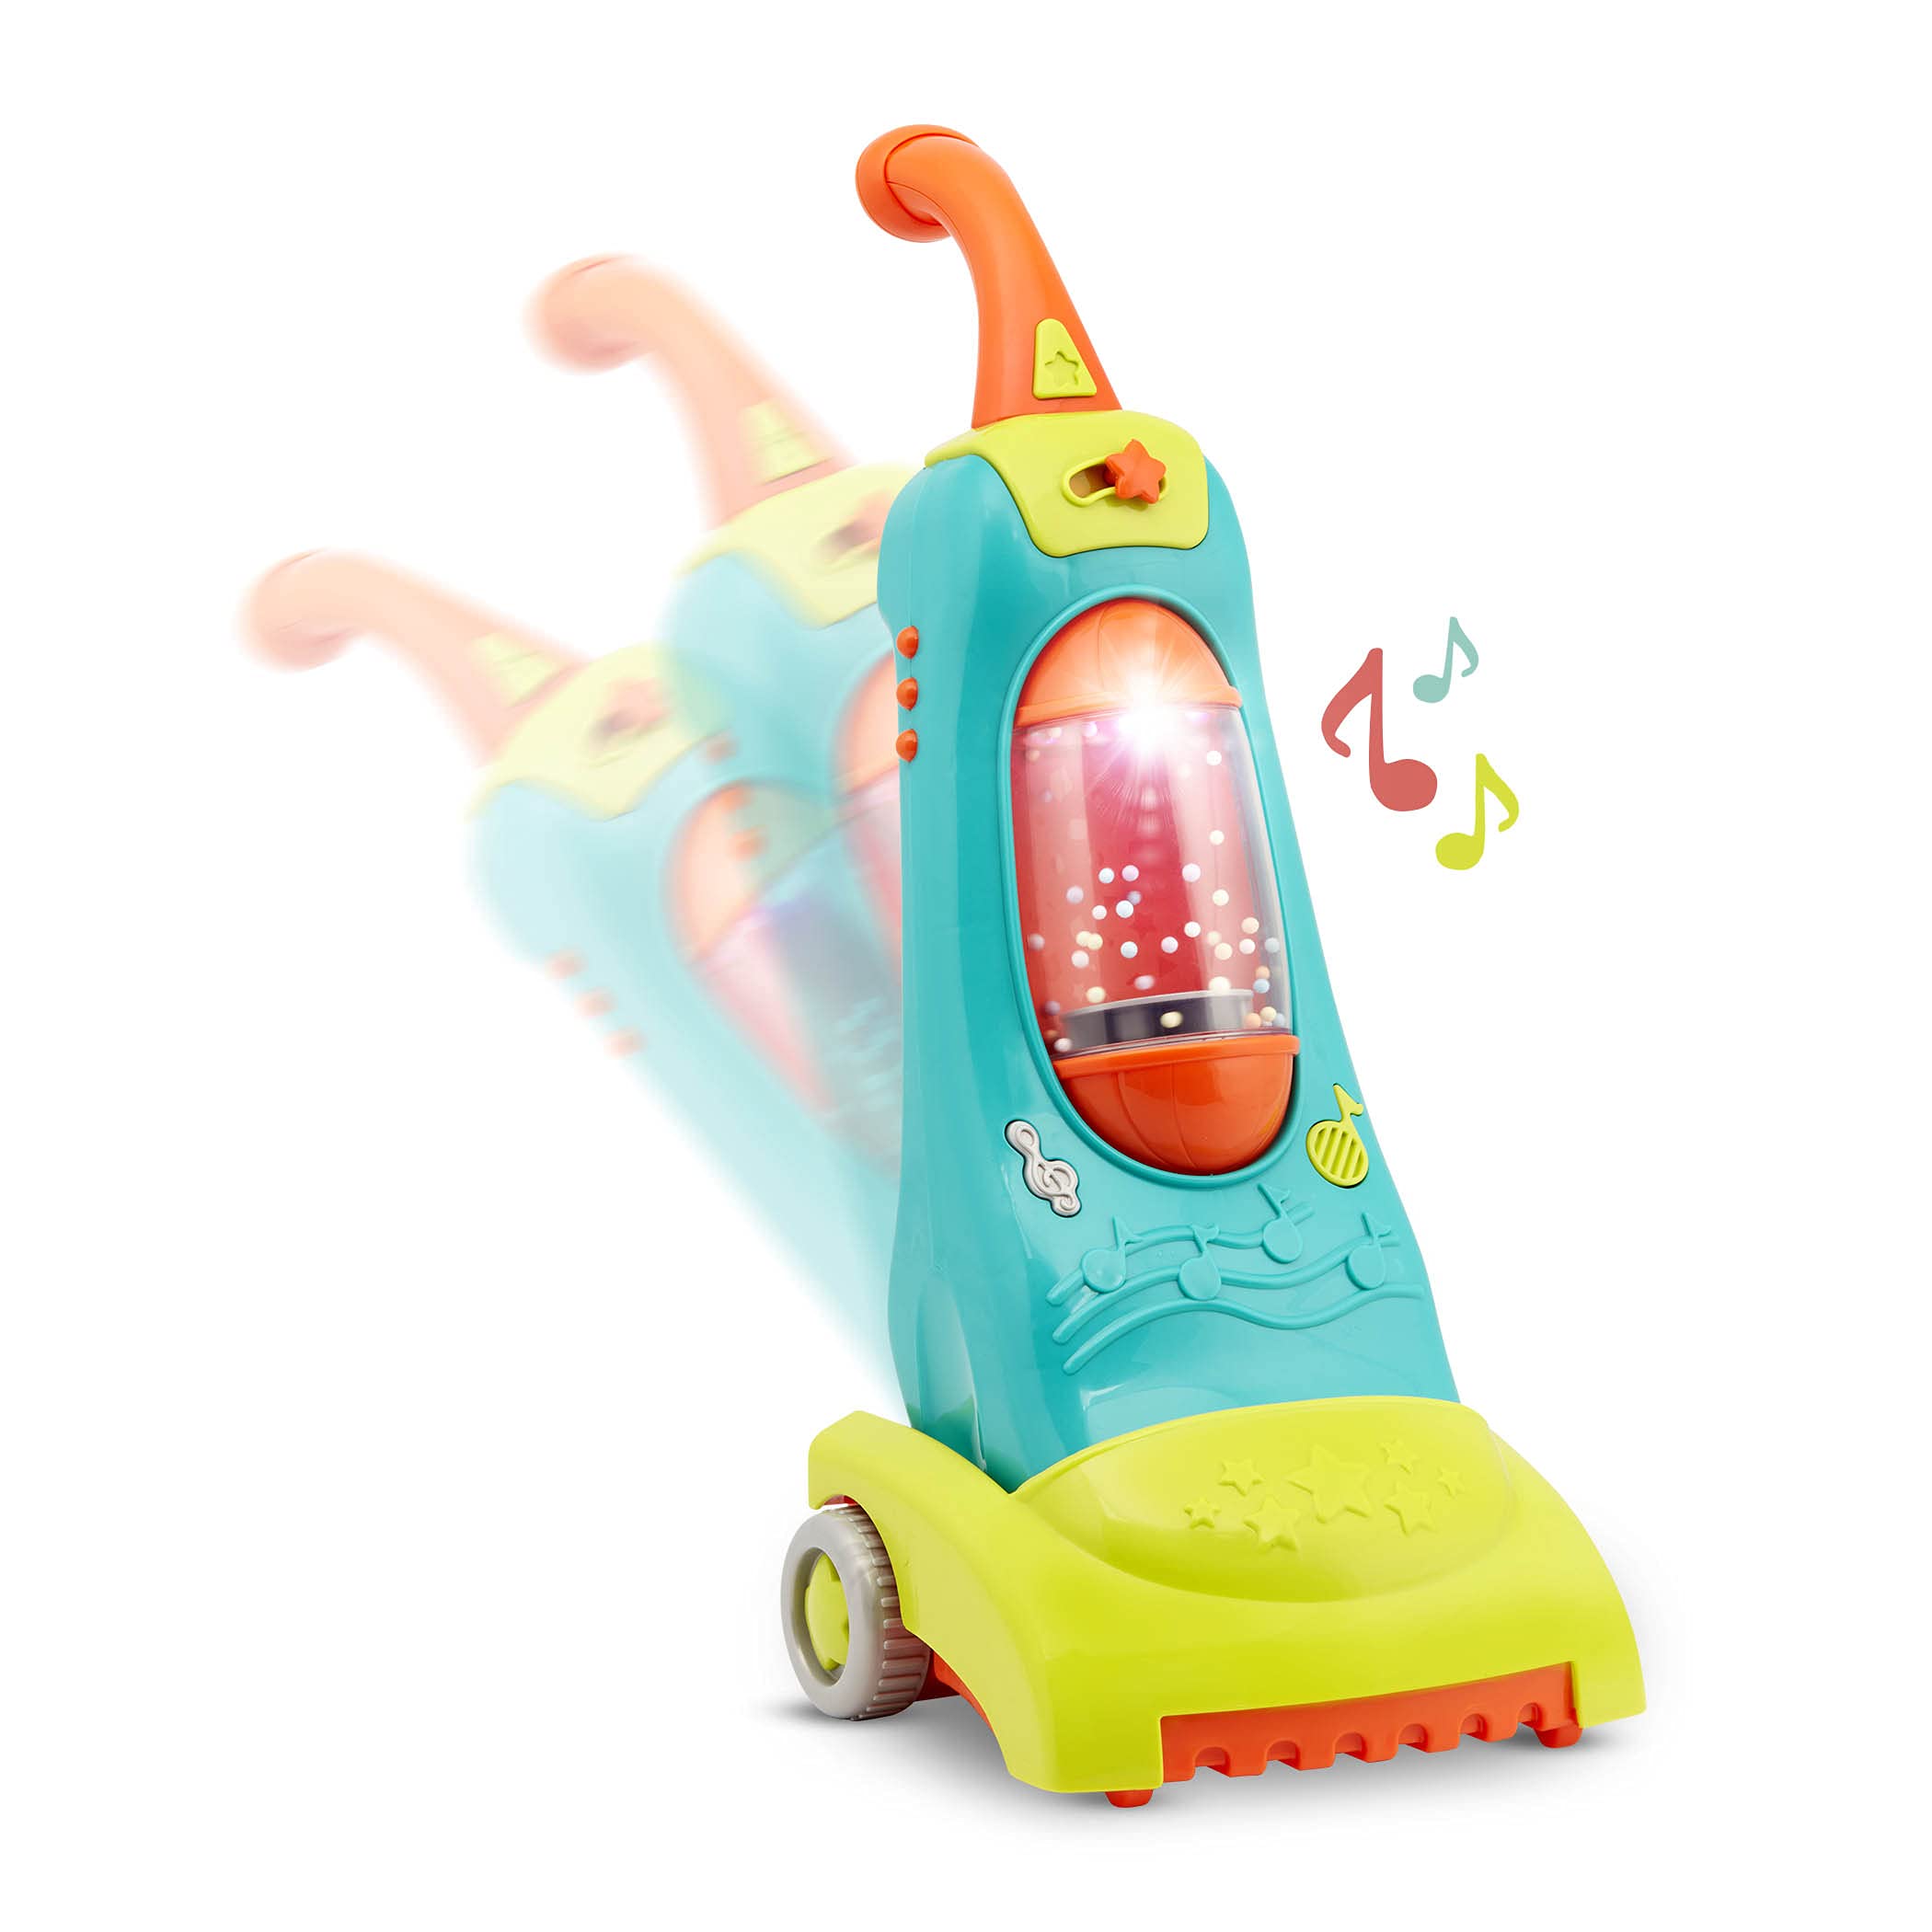 Battat BT2741C1Z Kinder Staubsauger mit Musik, Lichtern und realistischen Geräuschen, Haushaltsspielzeug – Spielzeug für Mädchen und Jungen ab 2 Jahren, Bunt